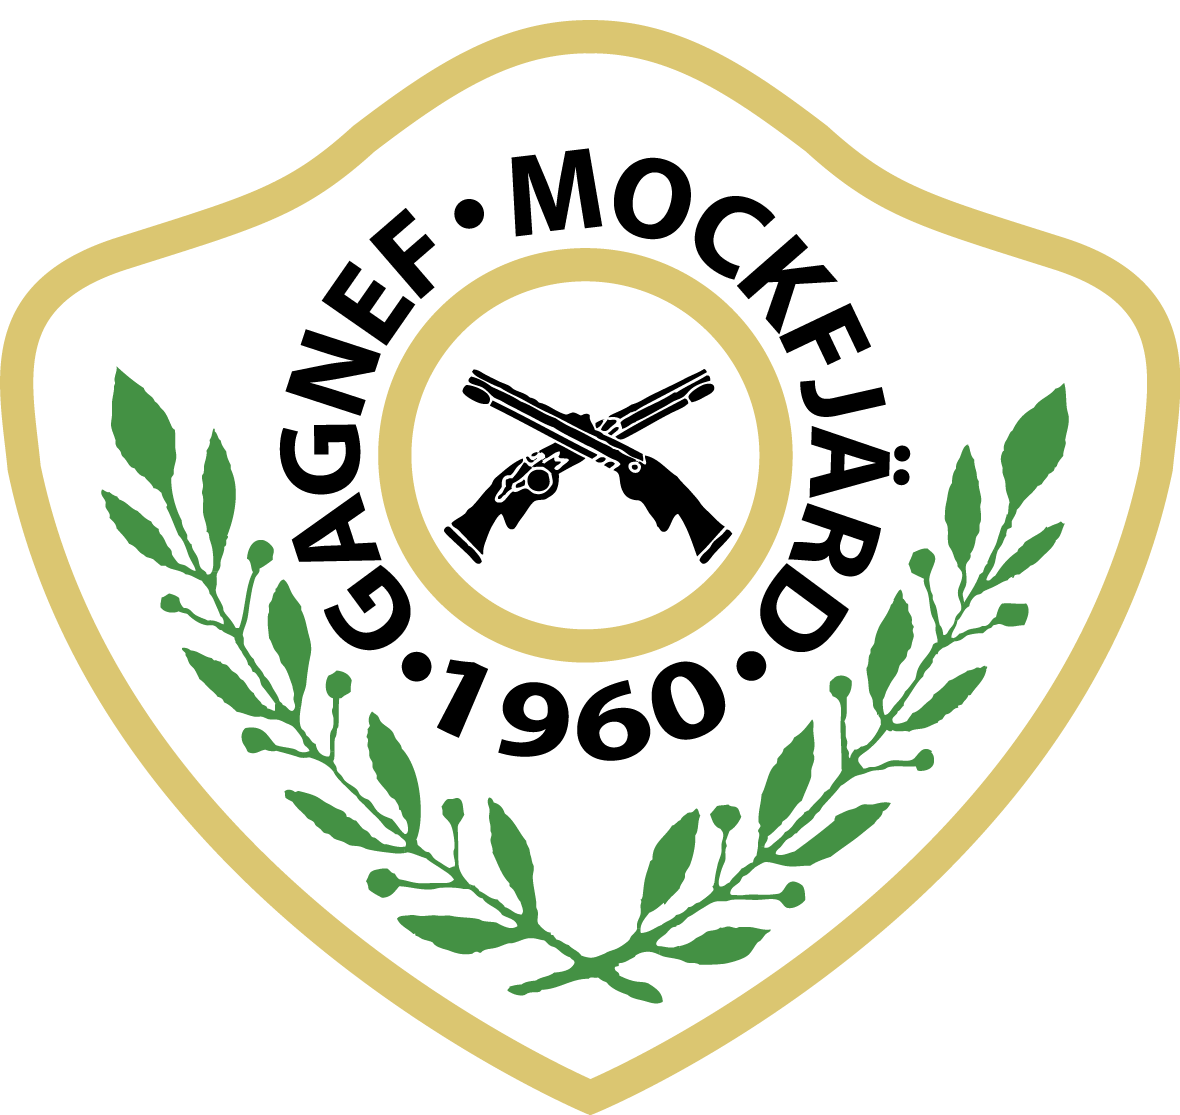 Gagnef-Mockfjärds Pistolskytteklubb